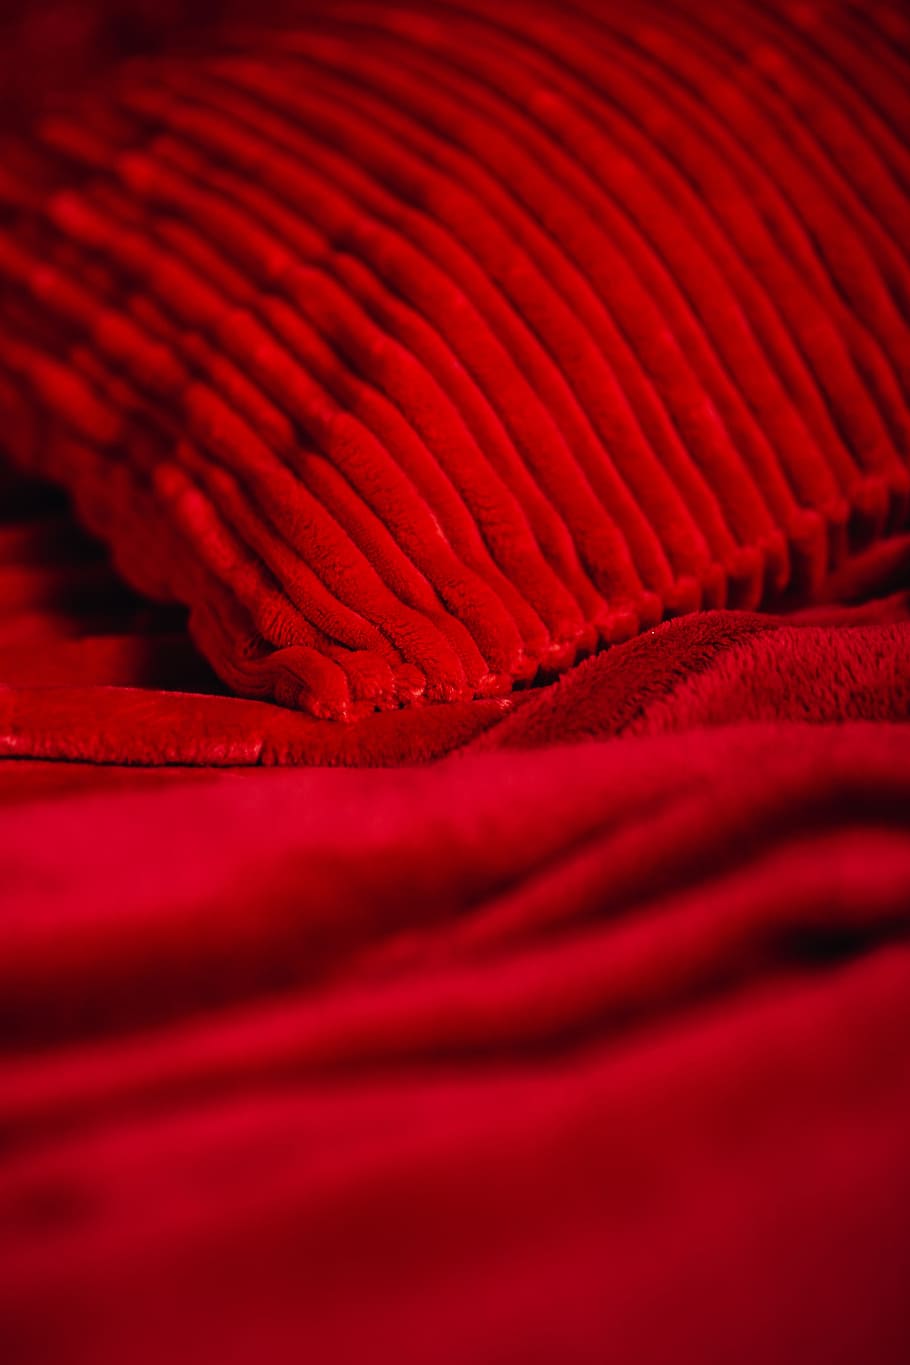 detalhes, romântico, vermelho, roupa de cama, plano de fundo, almofadas, textura, dia dos namorados, têxtil, moldura completa